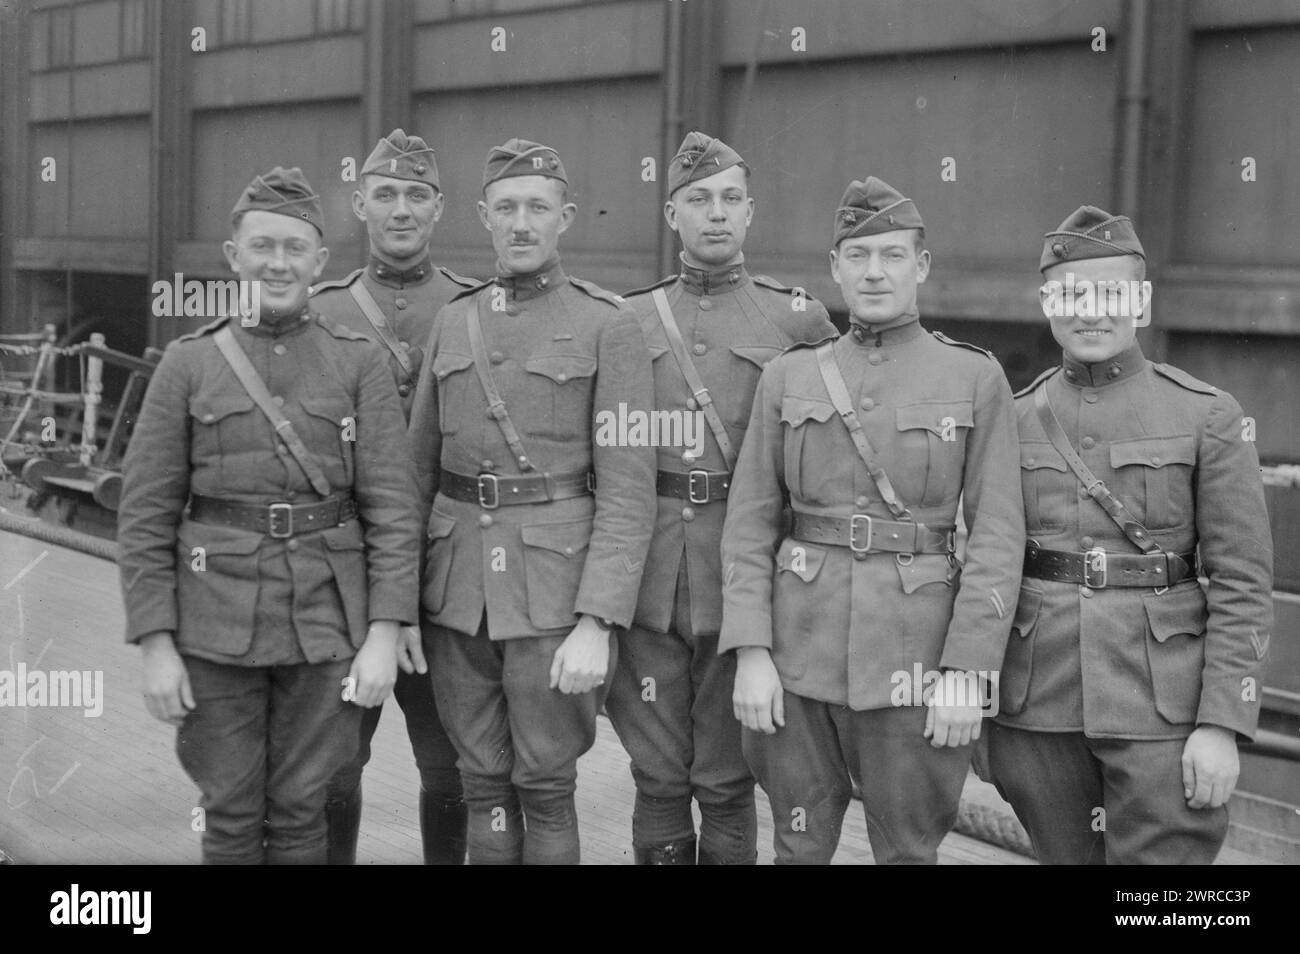 Marines de retour, photographie montre des Marines américains après leur retour aux États-Unis après la première Guerre mondiale, 1918 ou 1919, Guerre mondiale, 1914-1918, négatifs en verre, 1 négatif : verre Banque D'Images